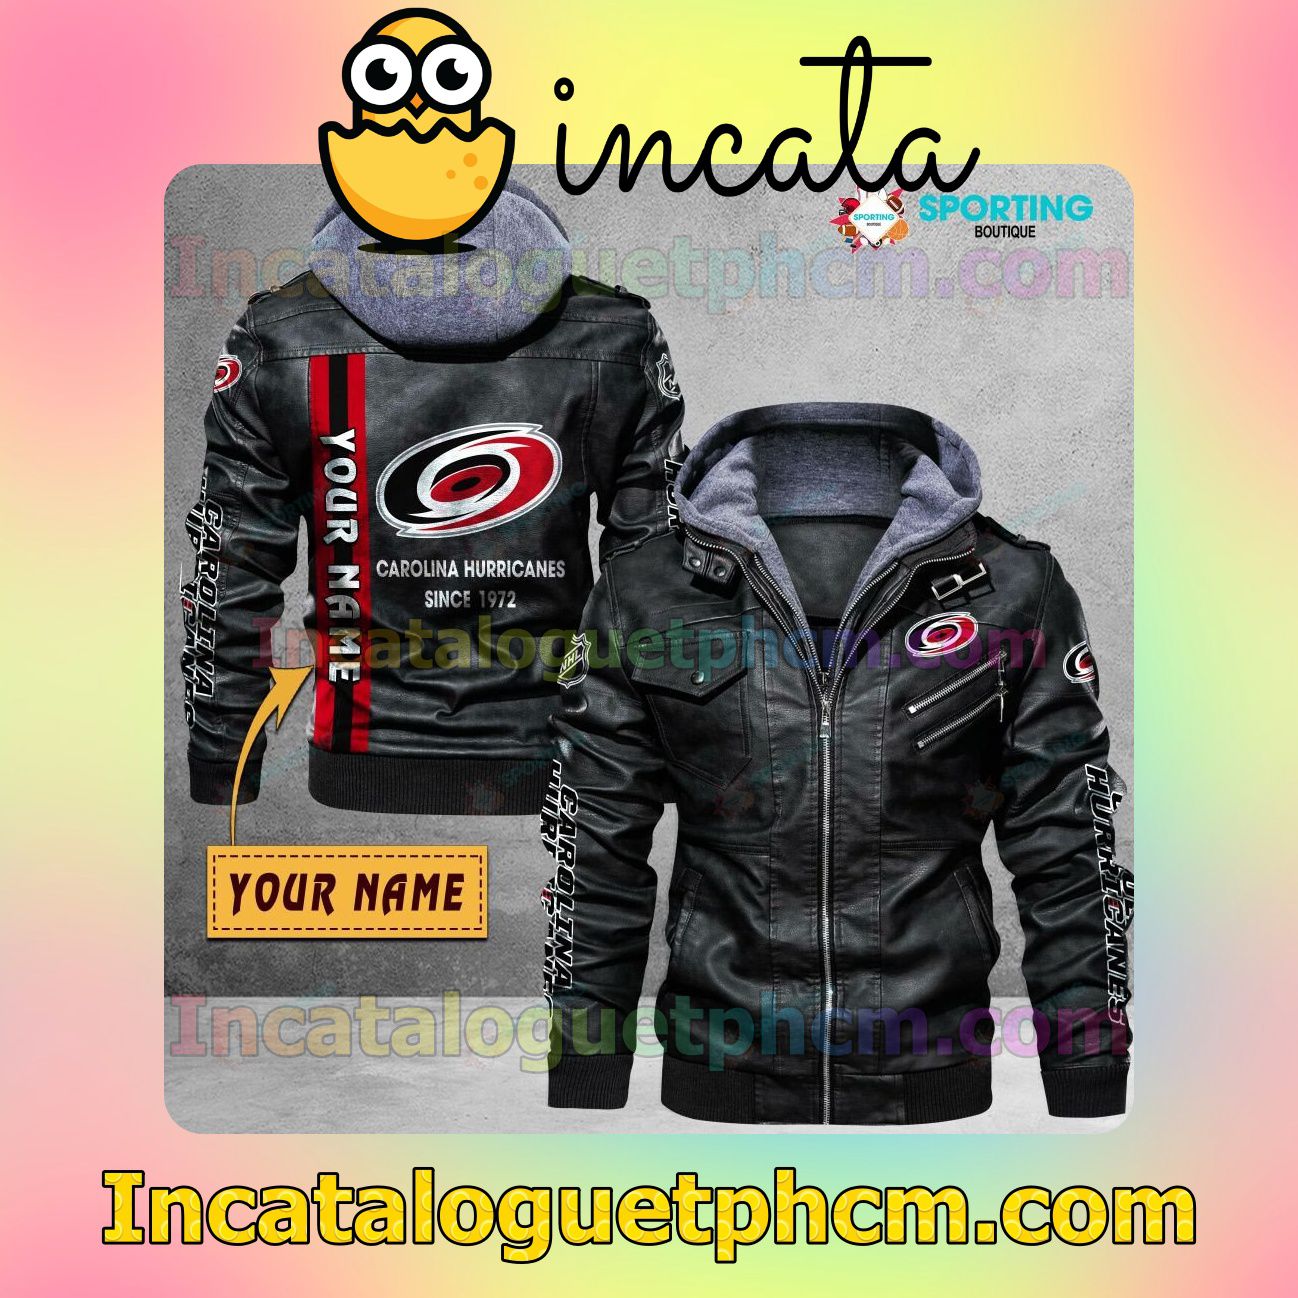 Carolina Hurricanes Customize Brand Uniform Leather Jacket